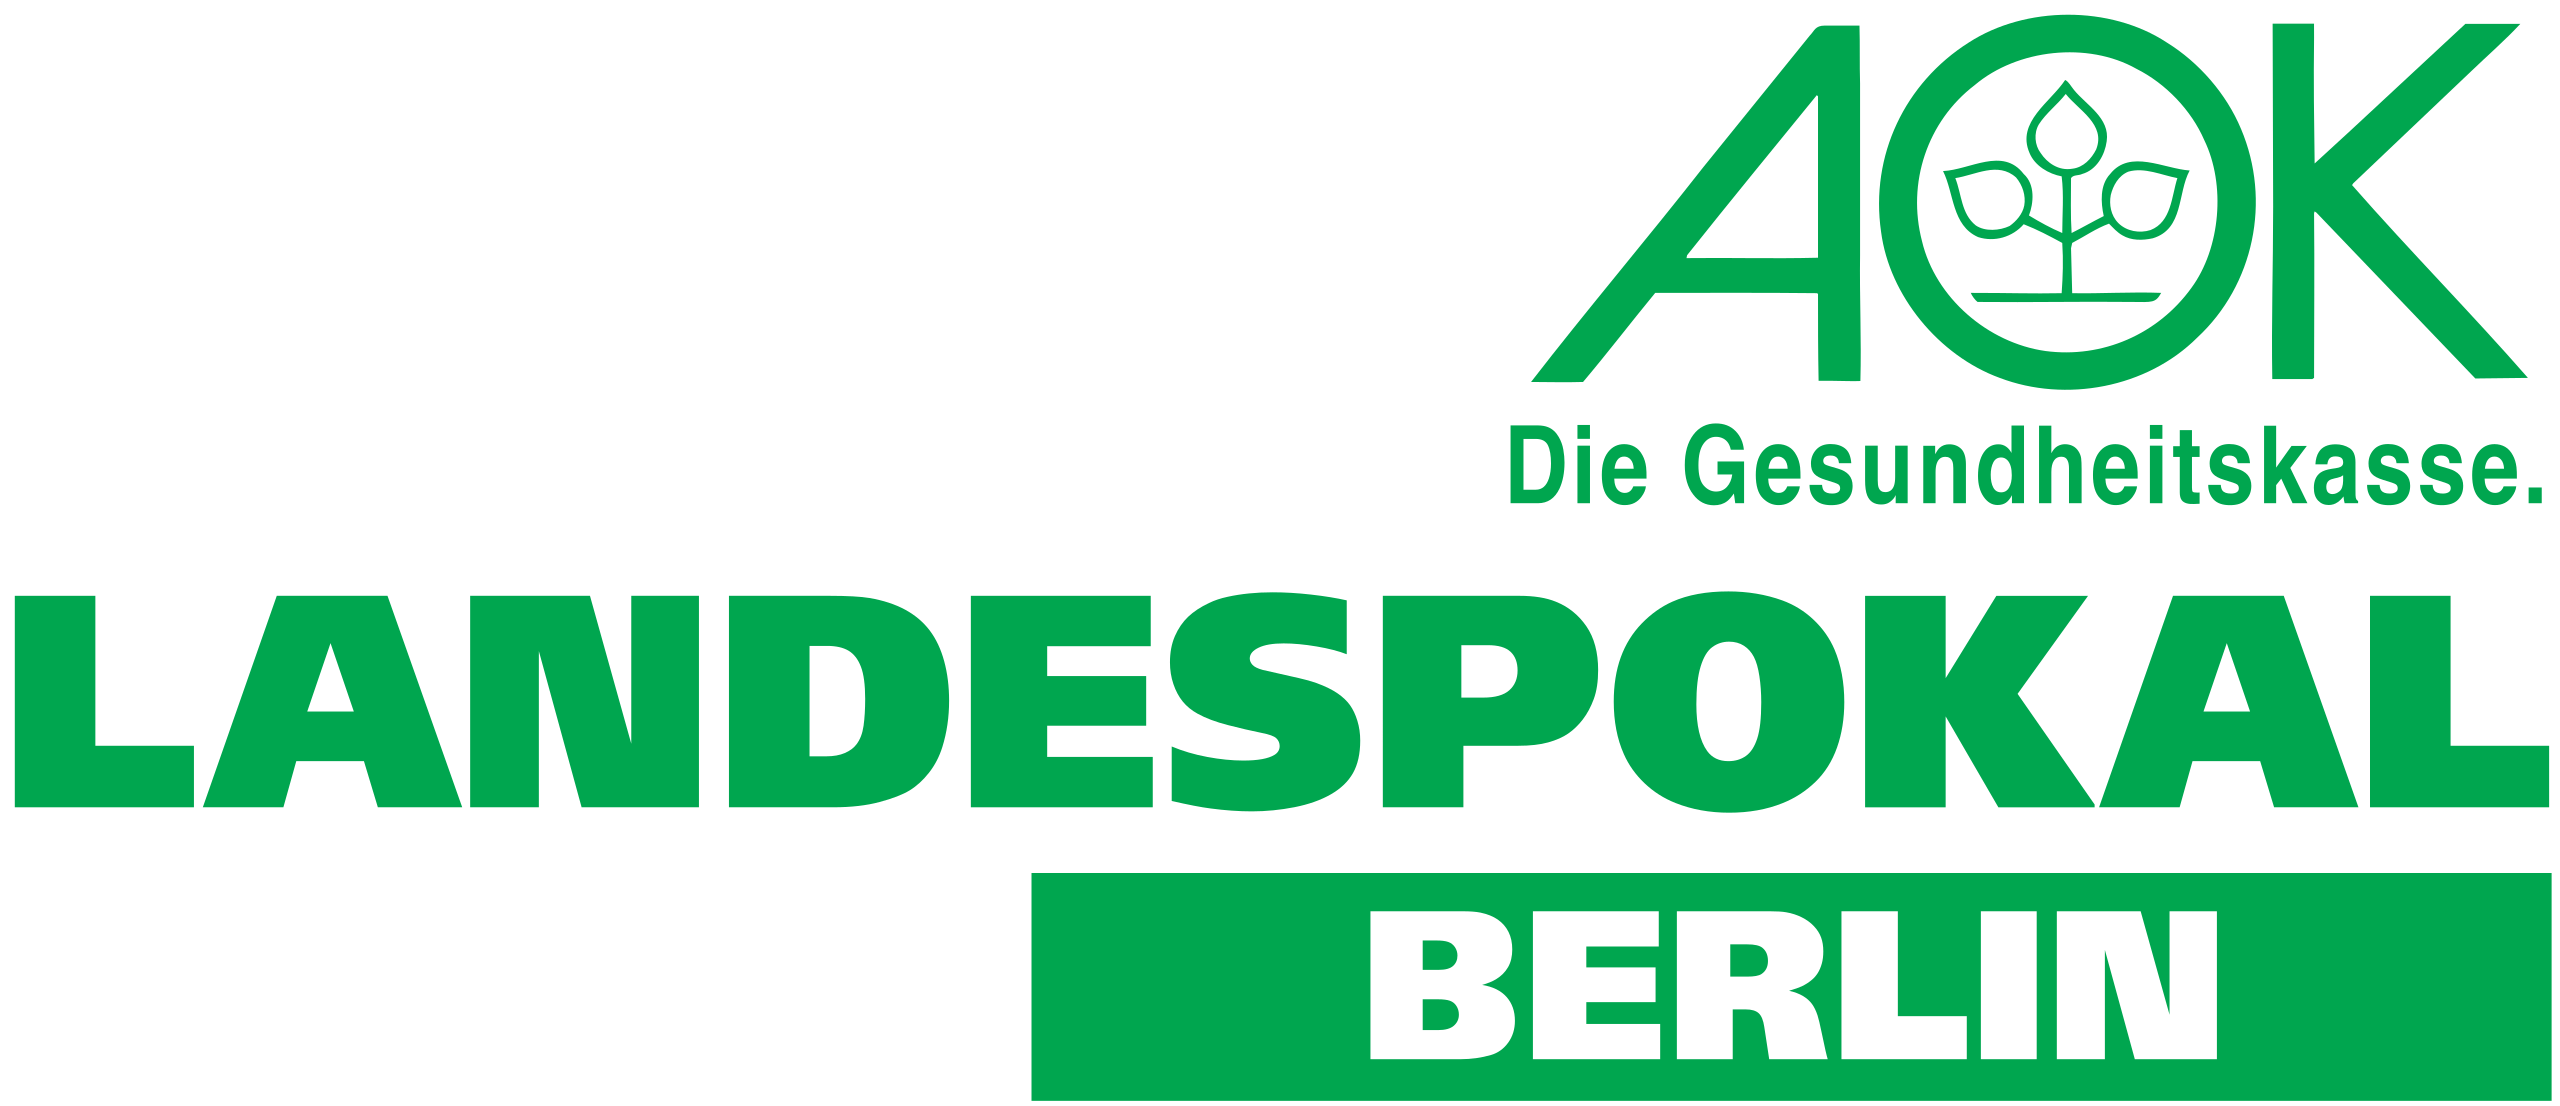 Berliner Landespokal 1962-63